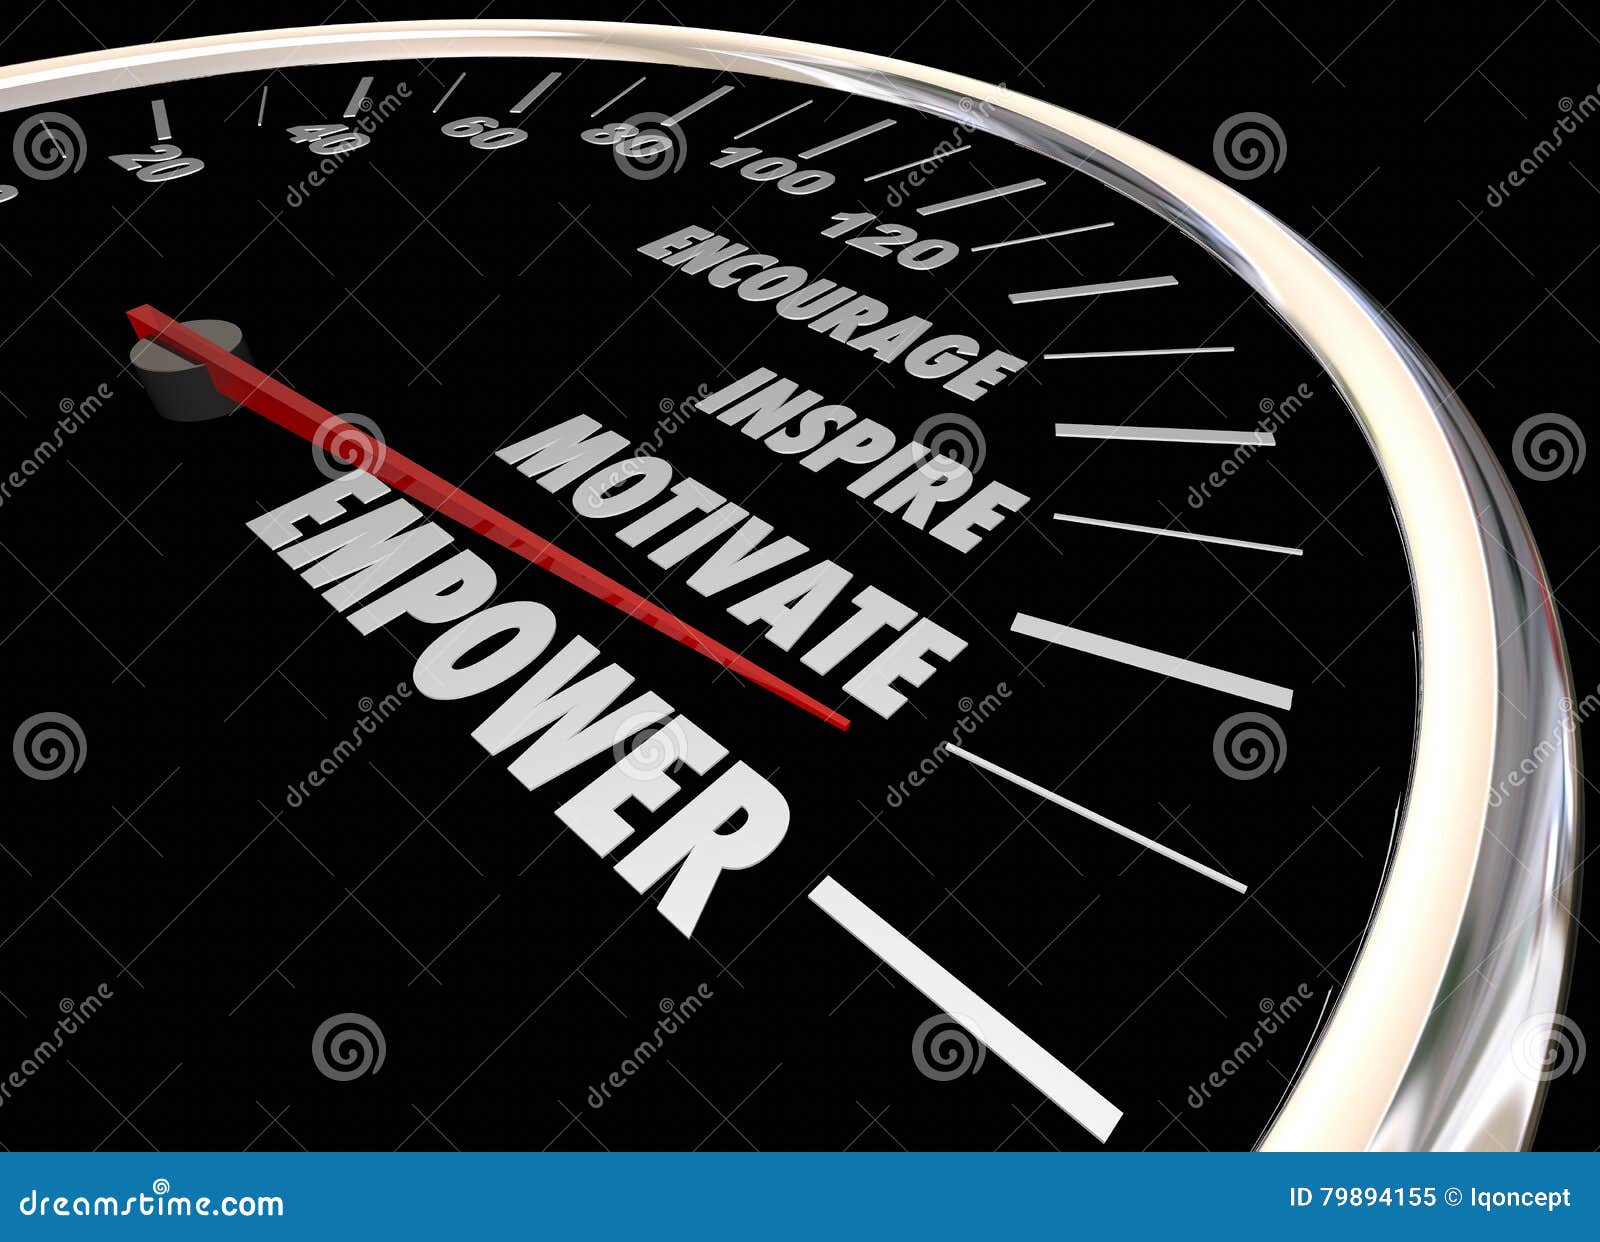 empower encourage motivate inspire speedometer